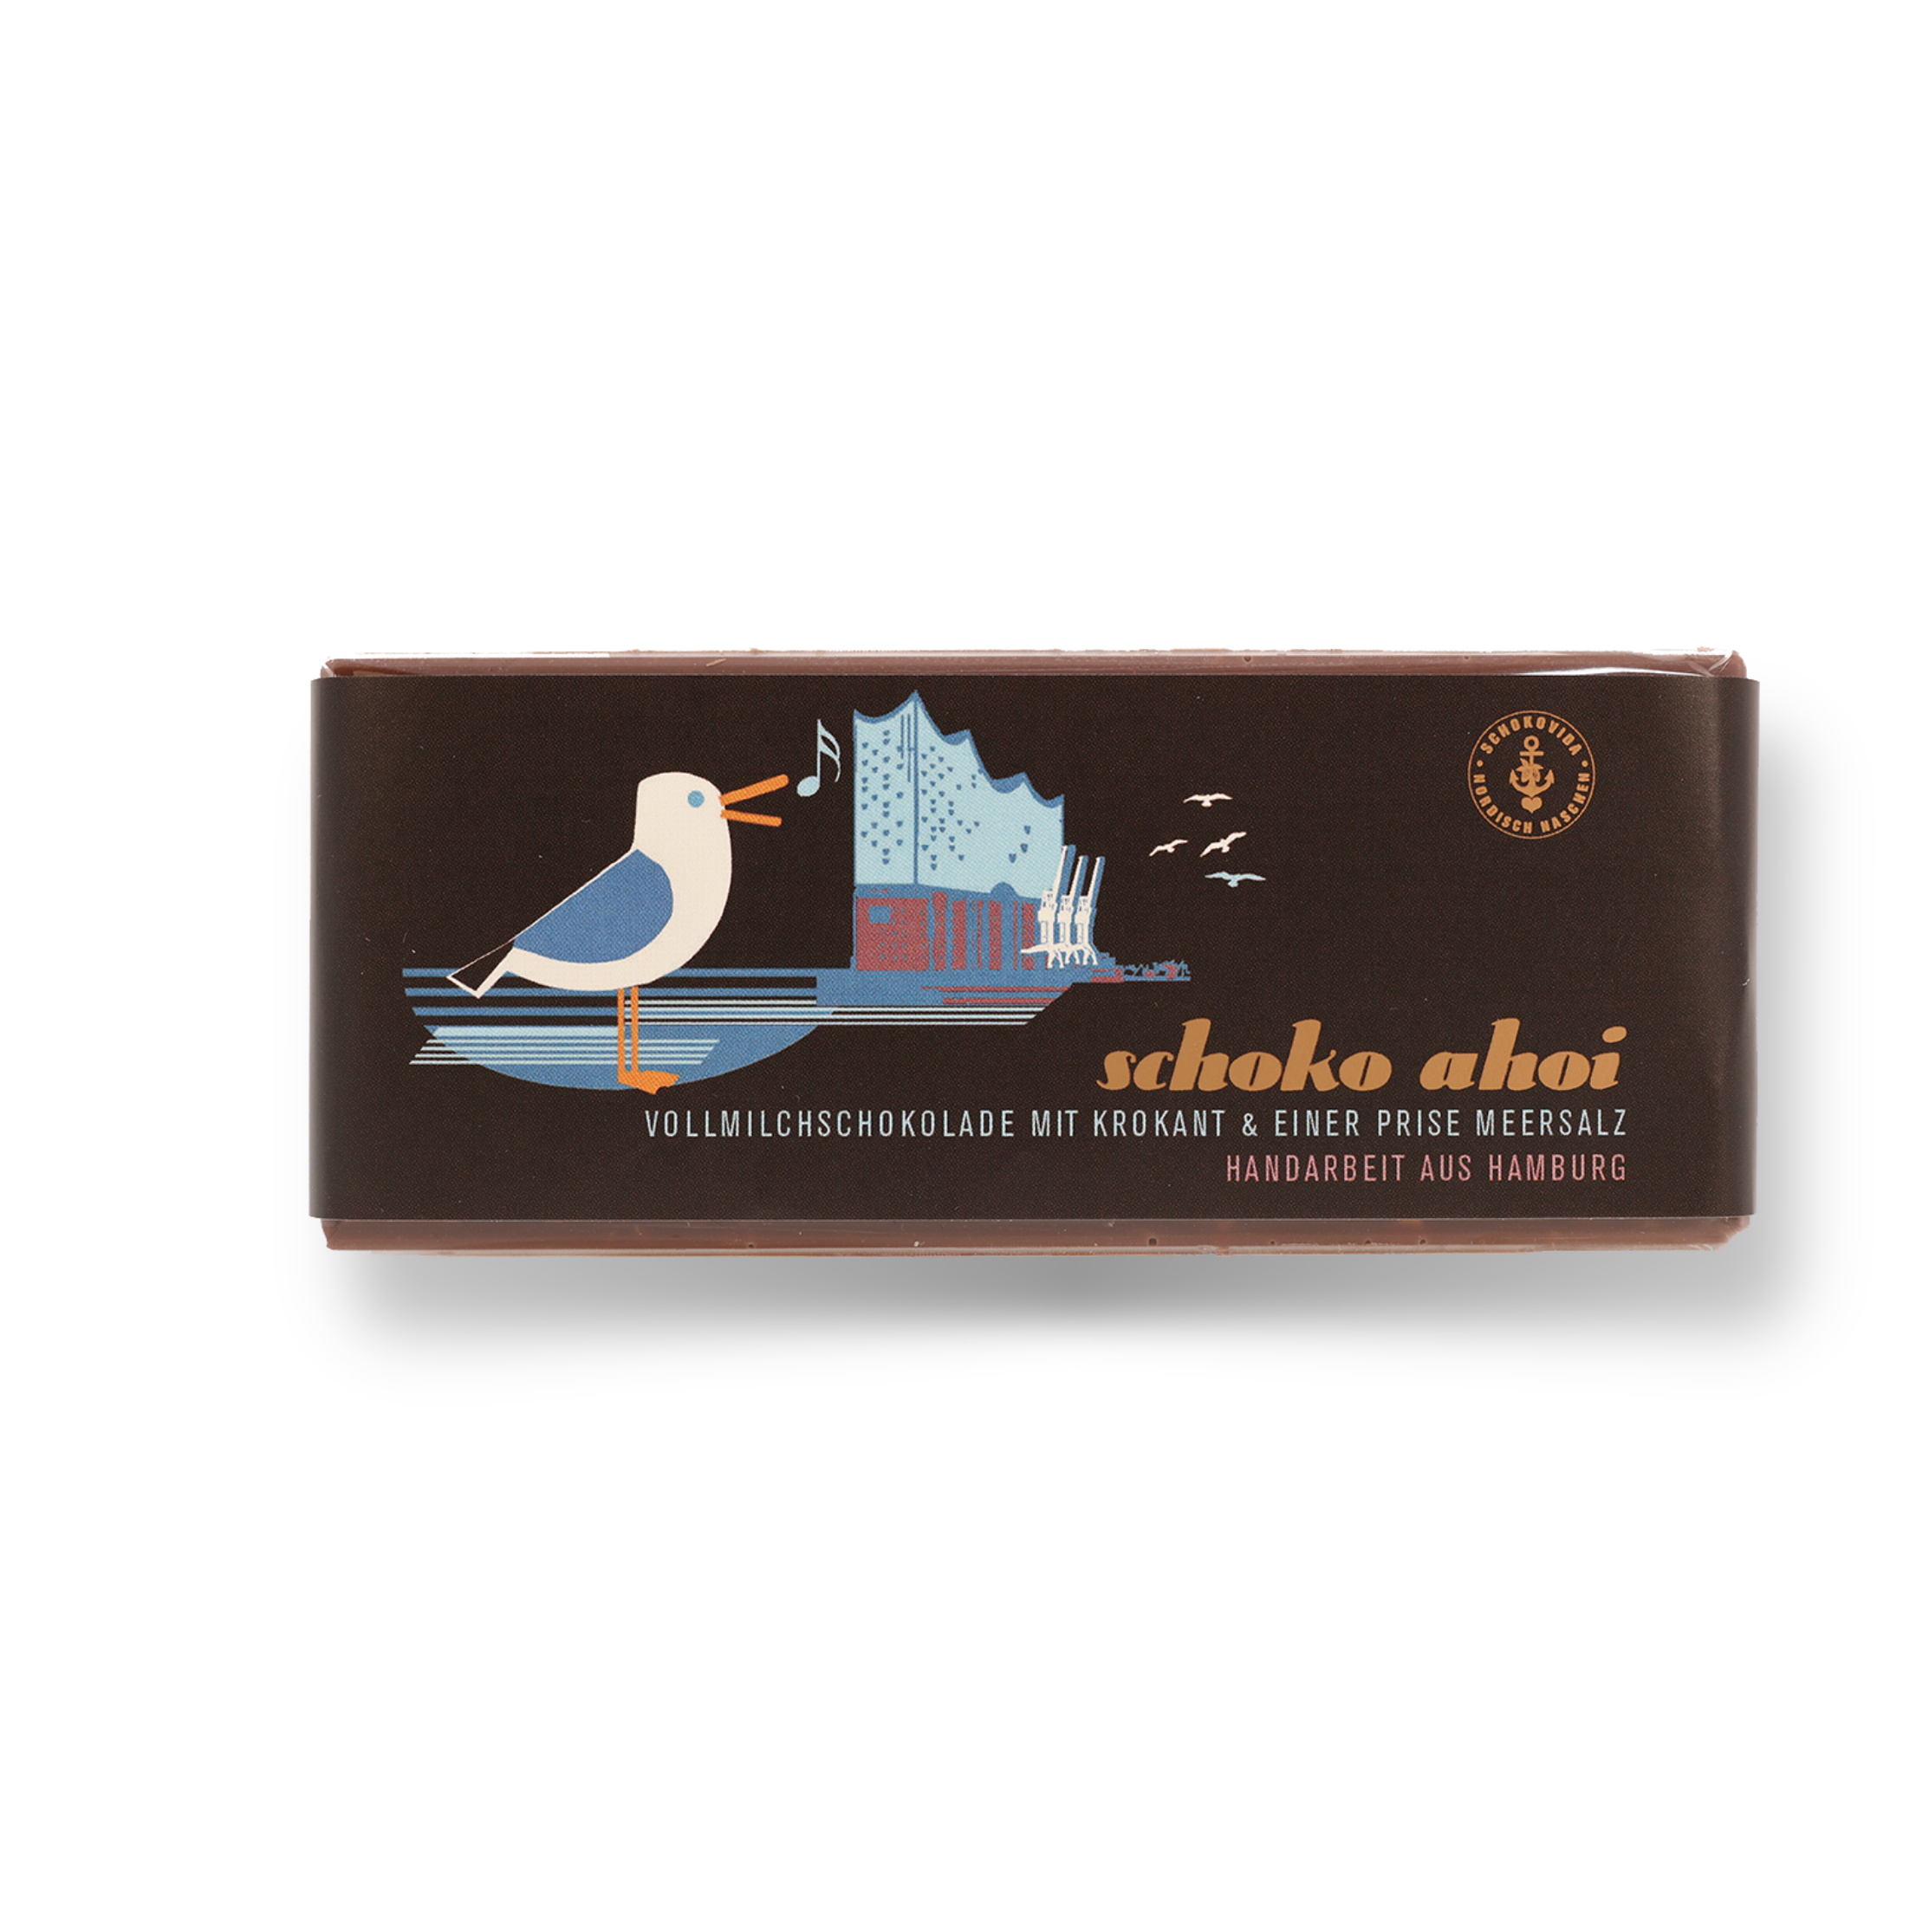 Schoko Ahoi lütt – Vollmilchschokolade mit Krokant und einer Prise Meersalz